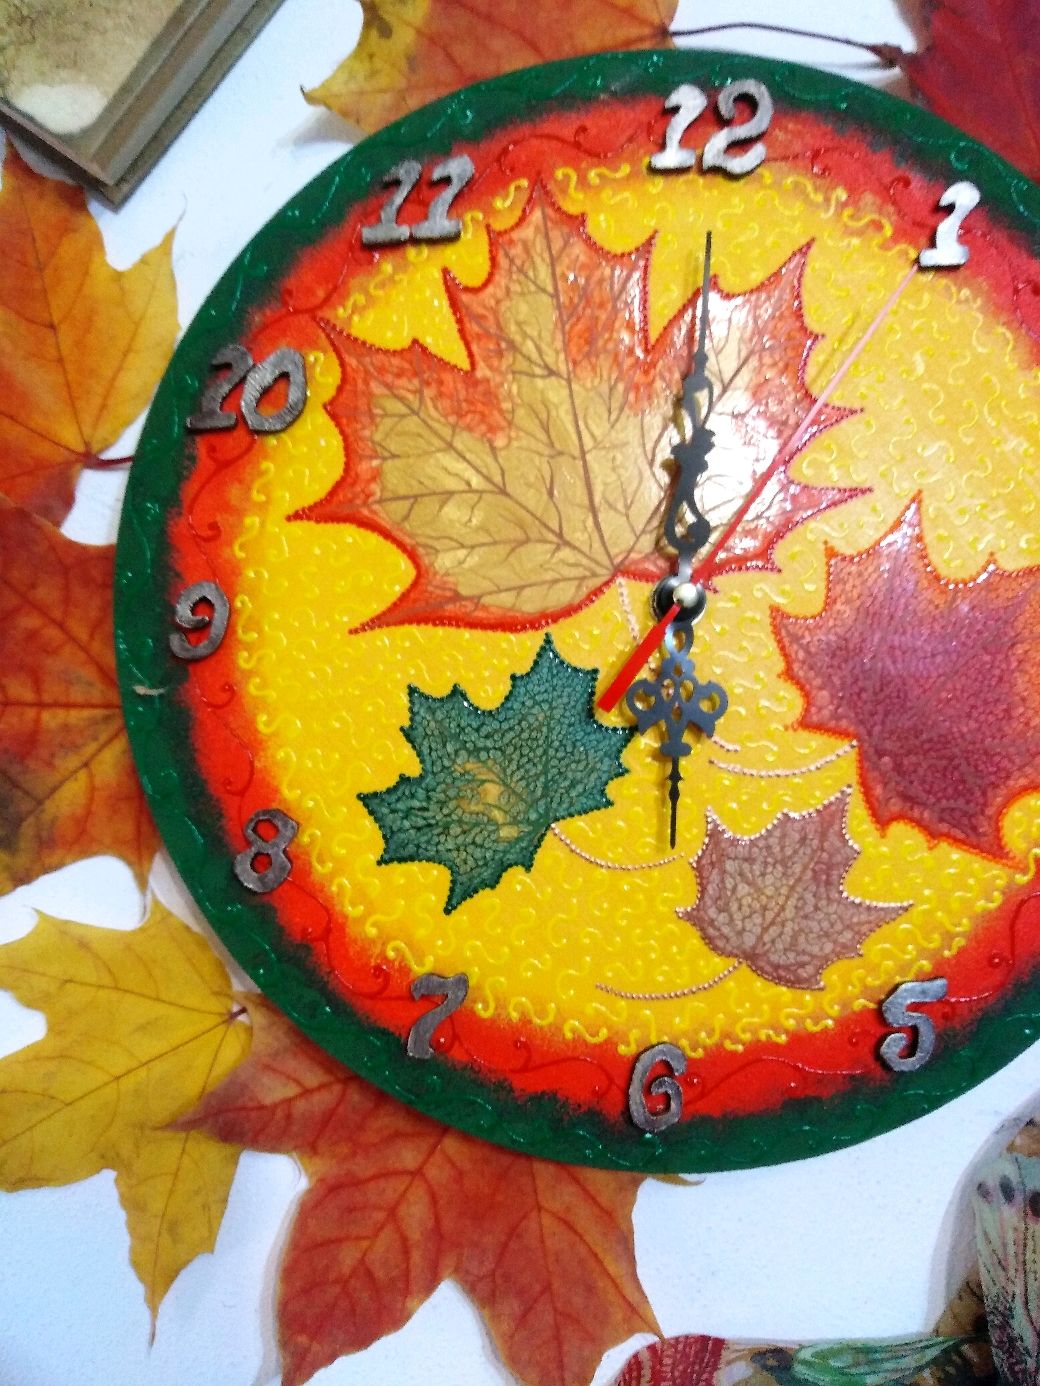 Часы из листьев